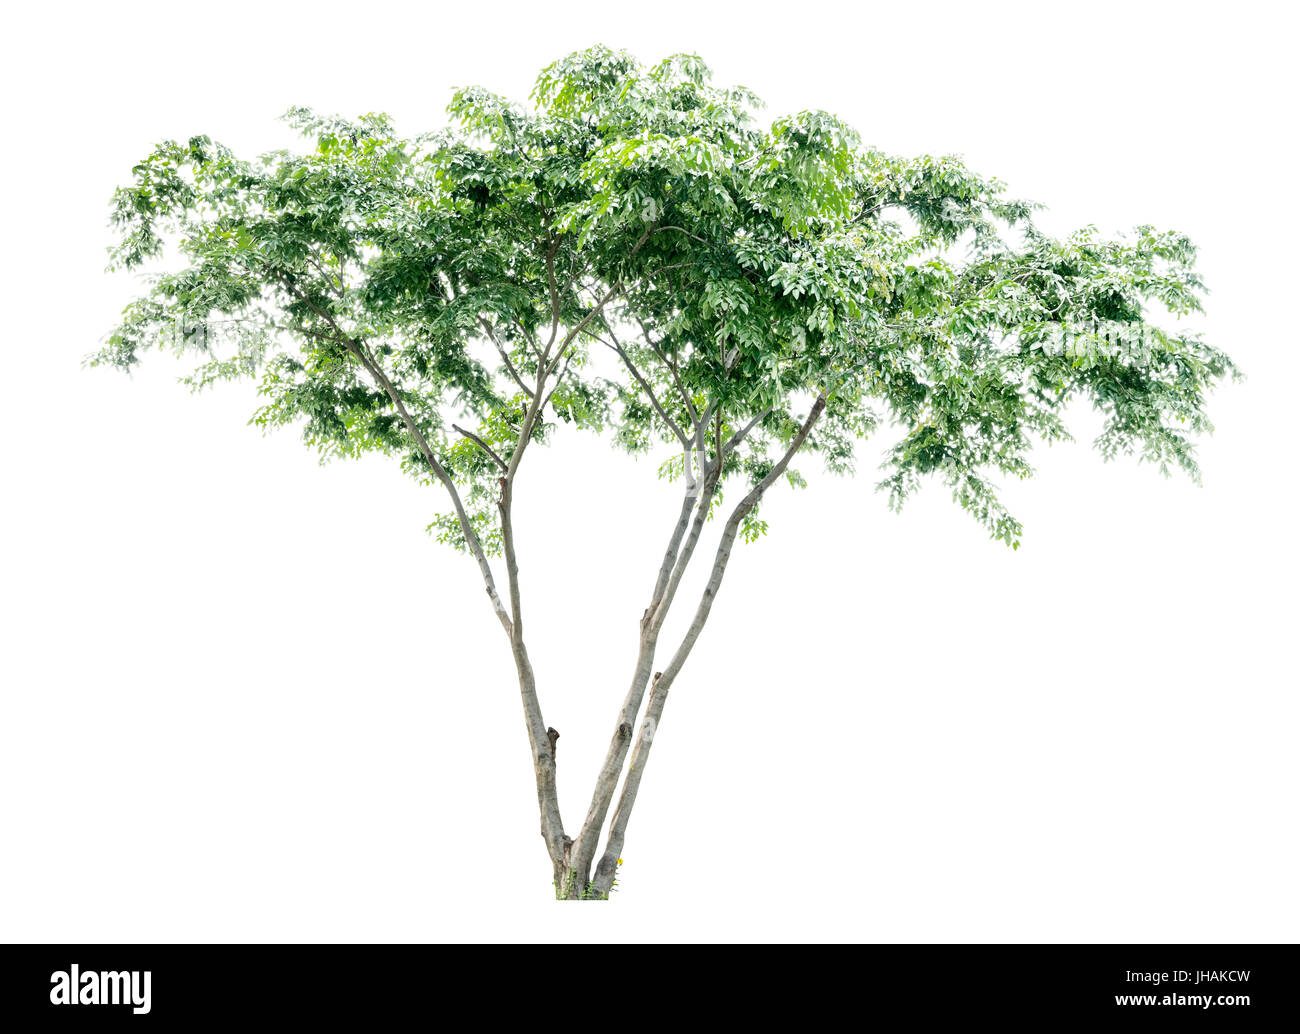 Albero tropicale isolata su sfondo bianco per design, pubblicità e architettura Foto Stock